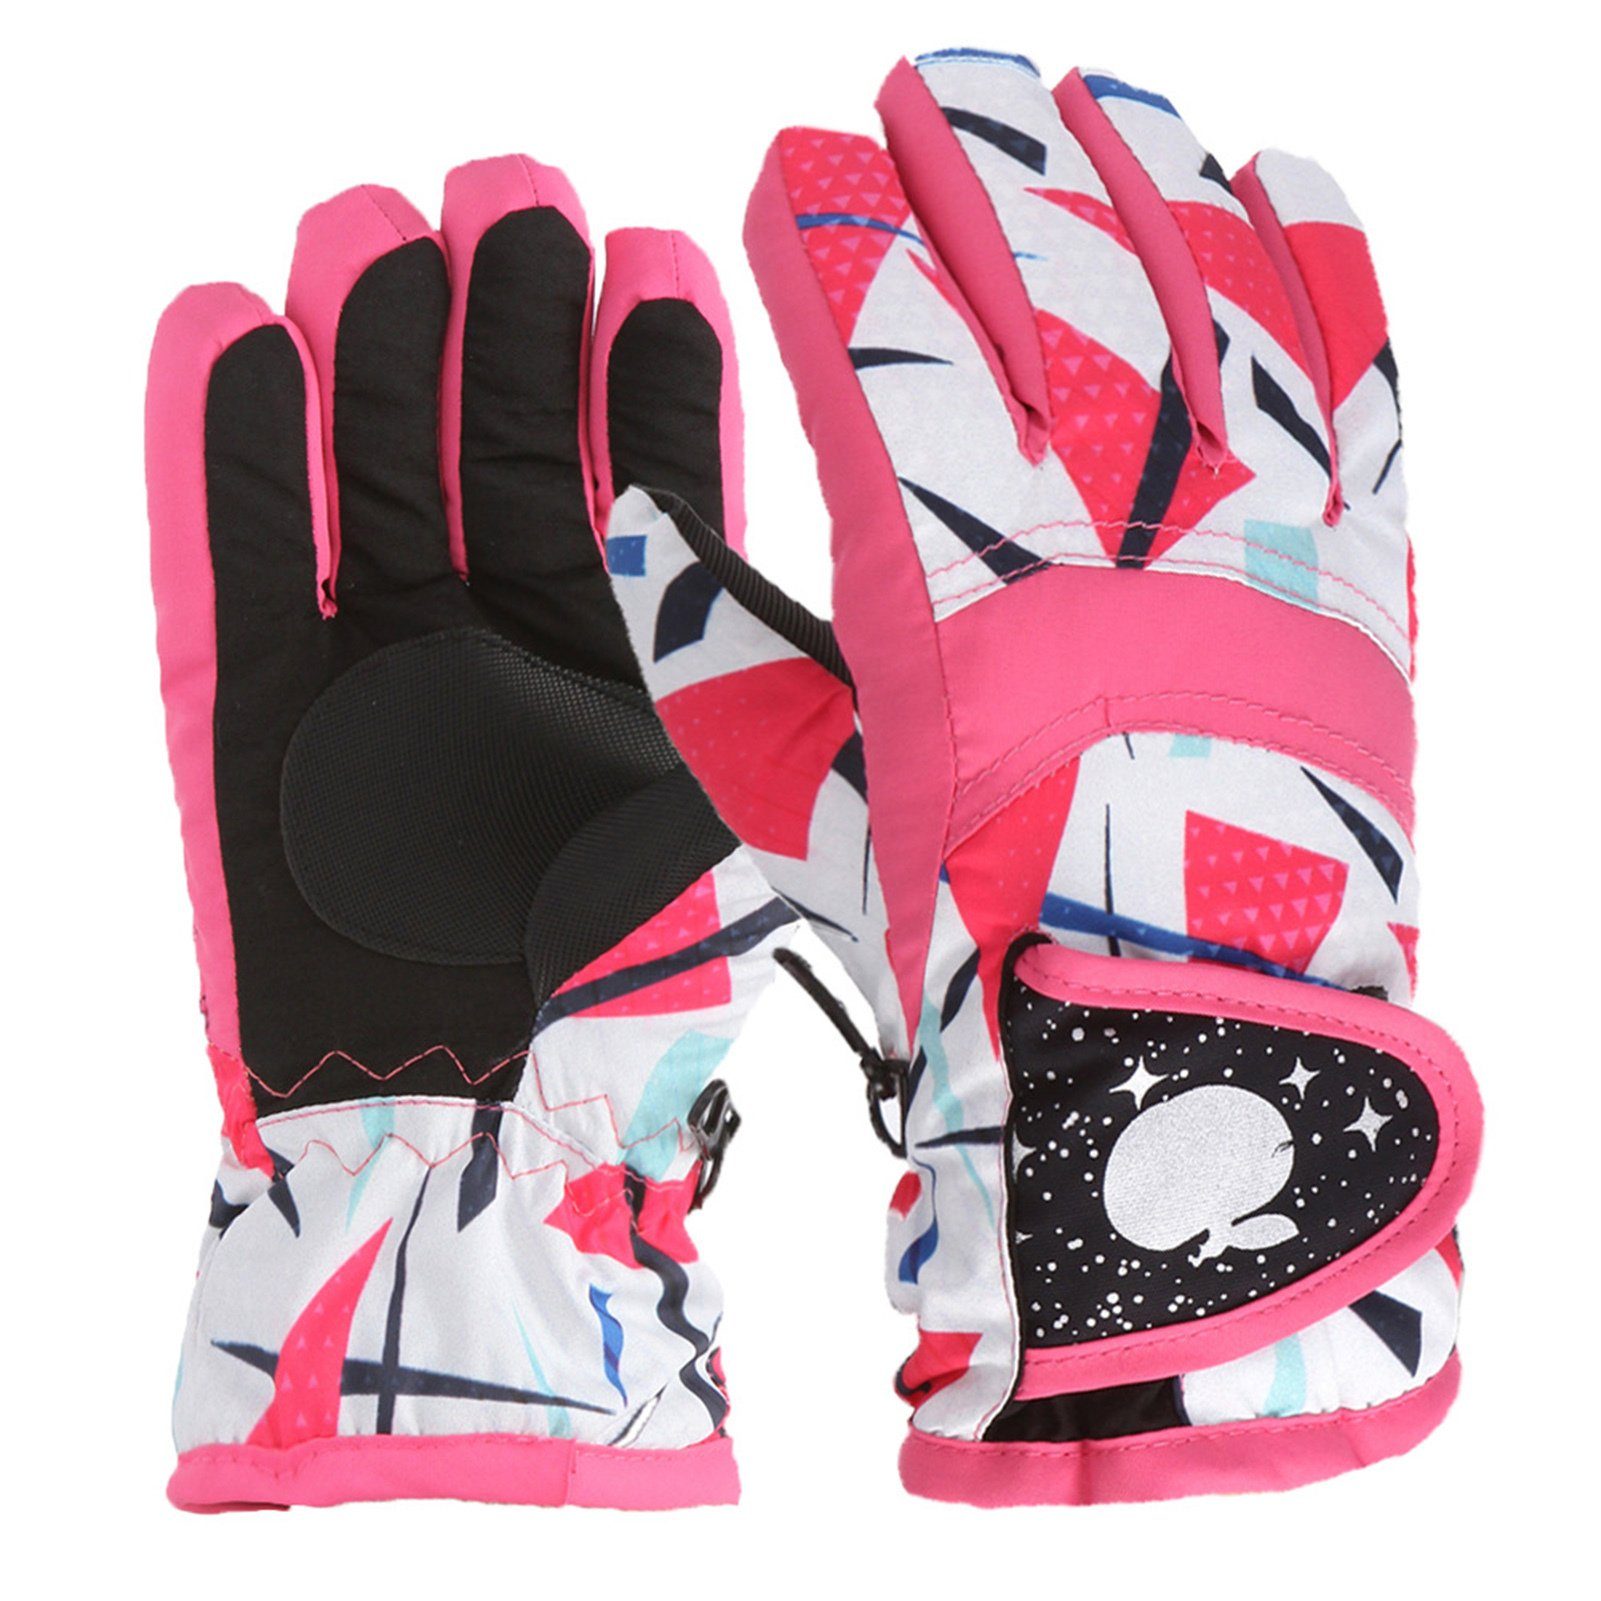 Blusmart Skihandschuhe Mit Für Cartoon-Muster, Bequeme pink Handschuhe Kinder-Skihandschuhe